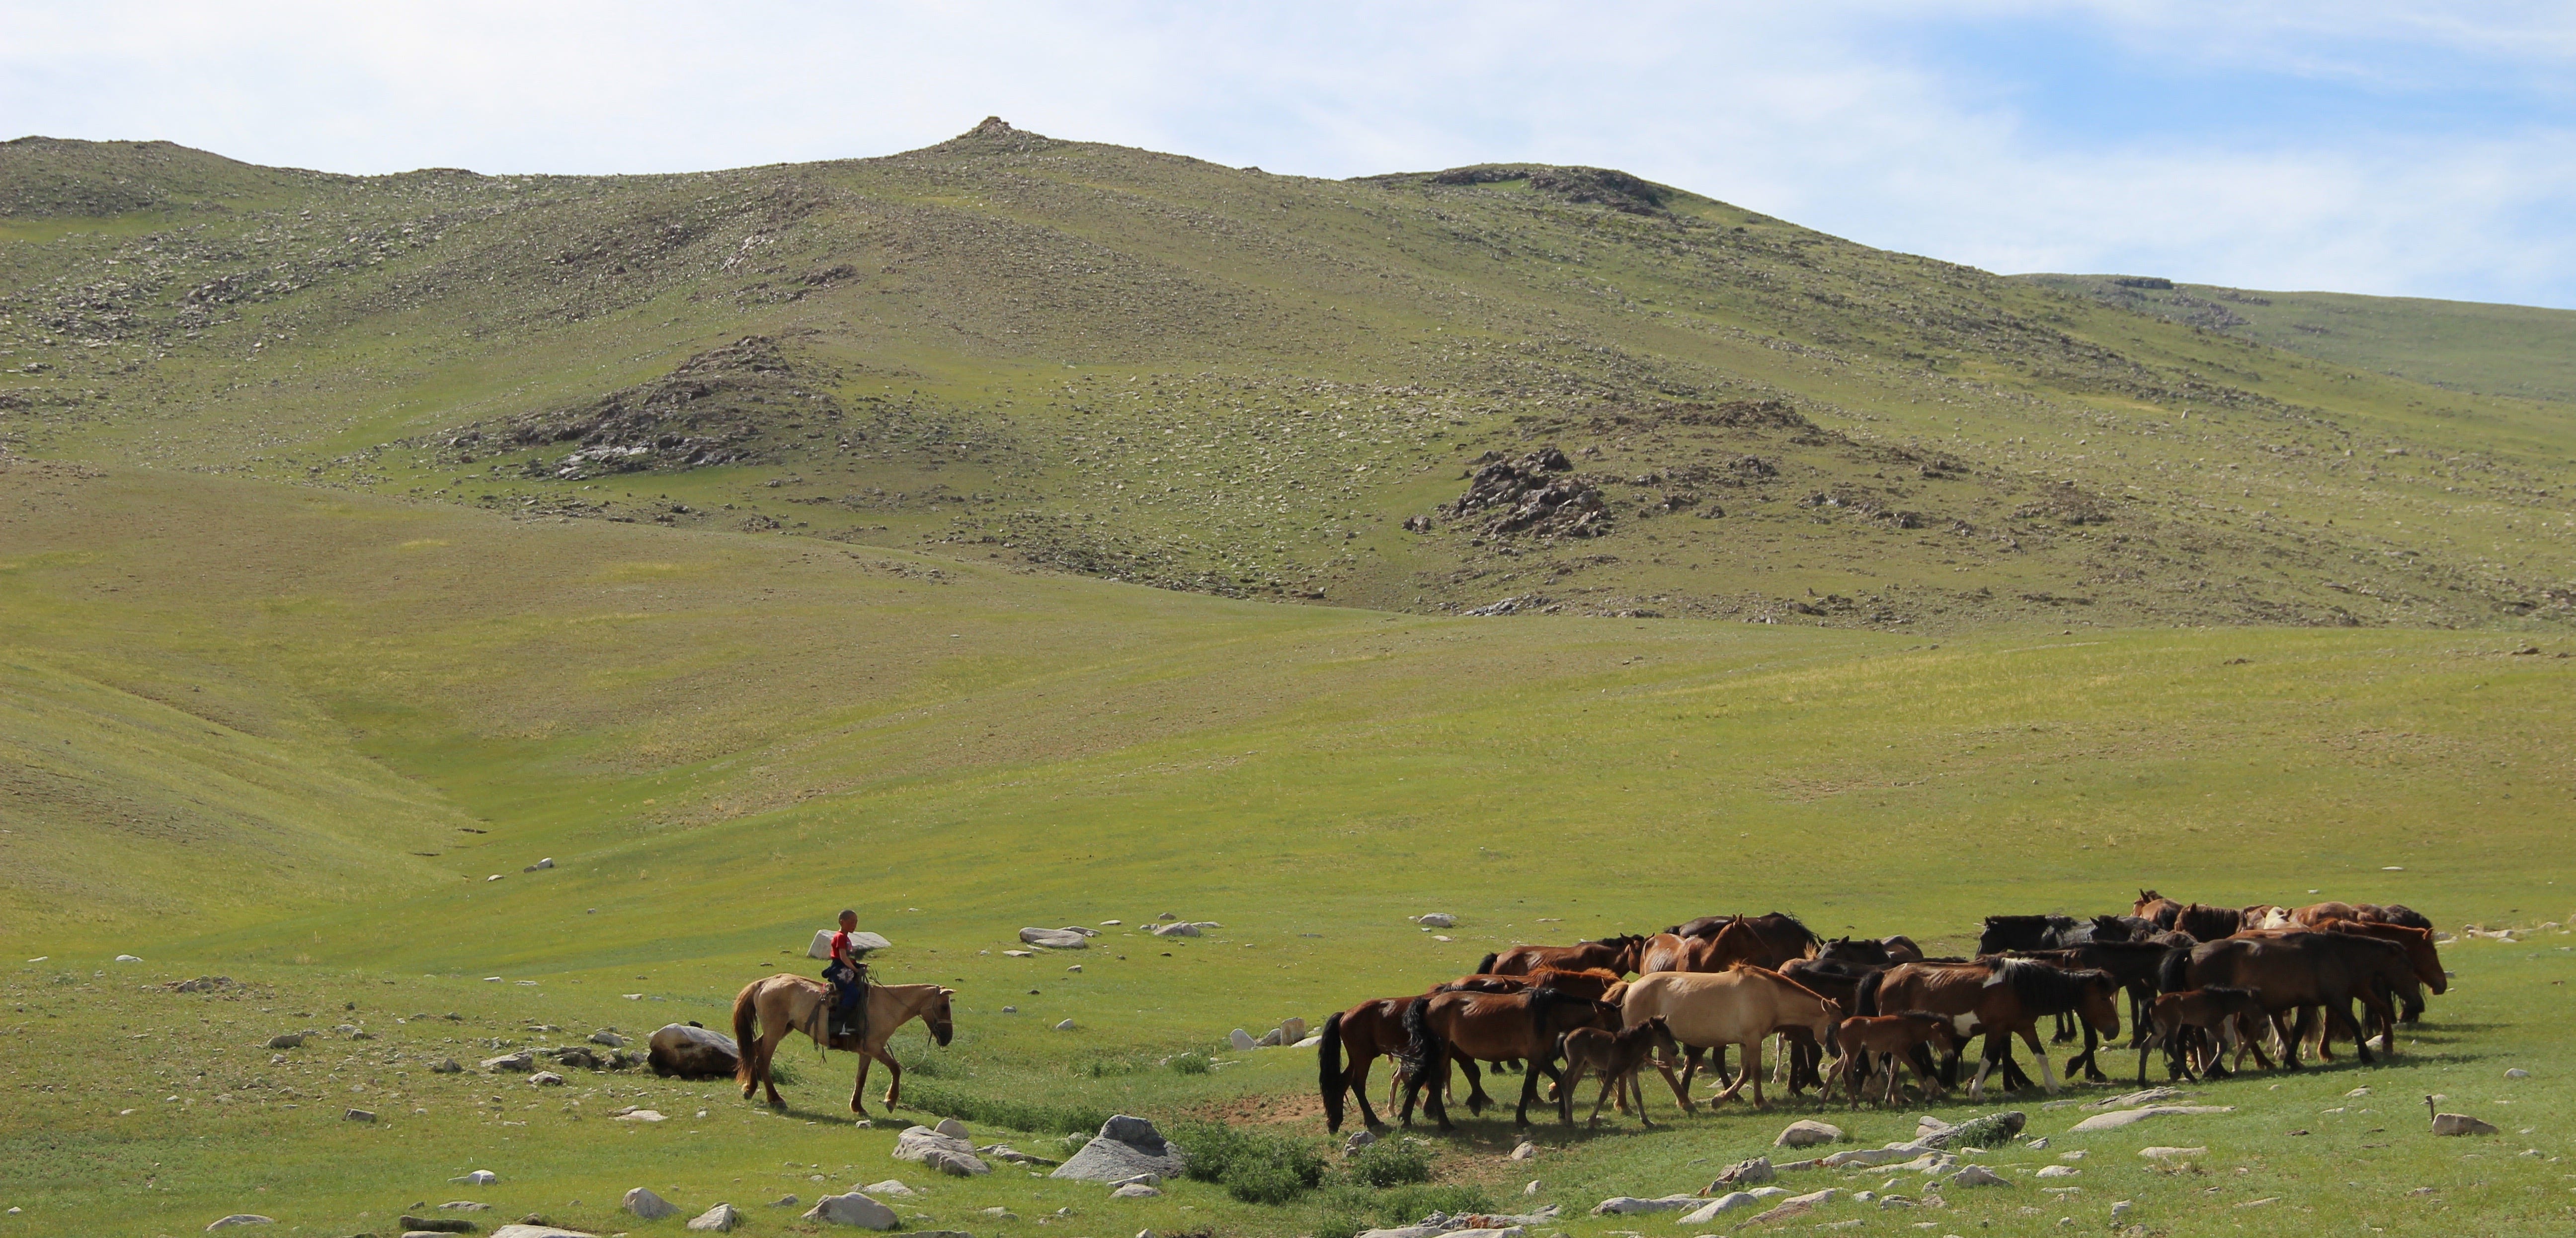 Mongolian steppes (Photo: medium.com/@LucyPage)